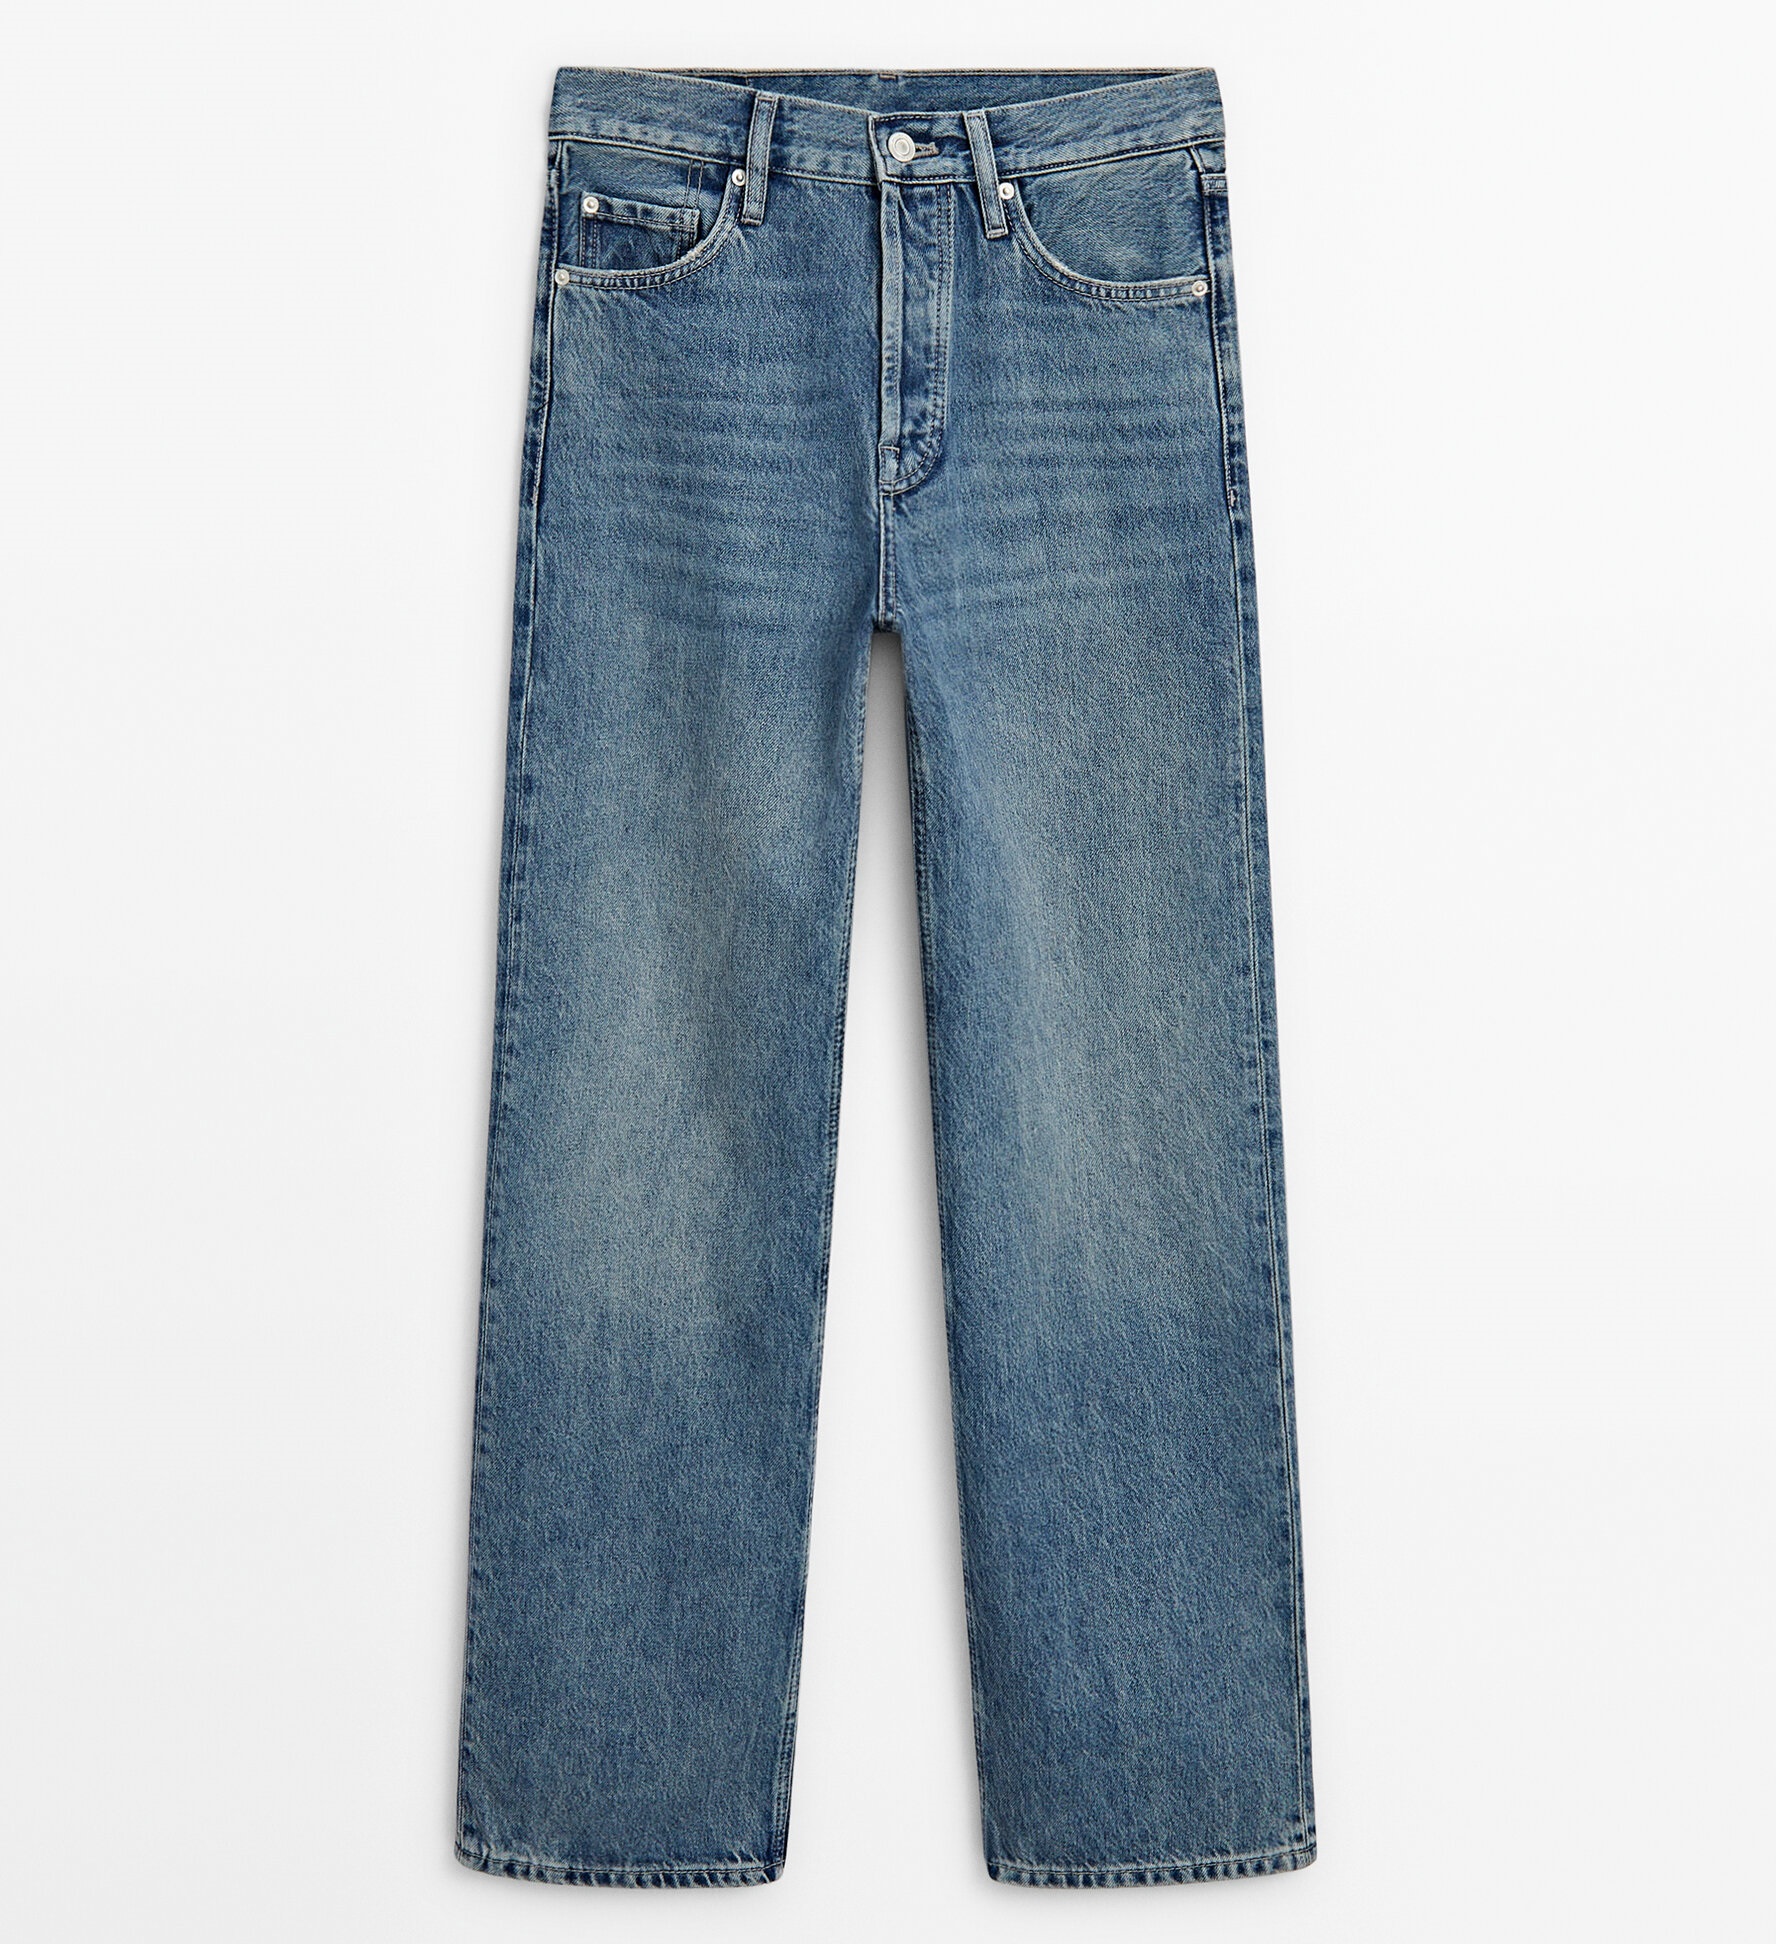 Джинсы Massimo Dutti Straight Fit High-waist, синий джинсы massimo dutti skinny flare fit high waist темно синий